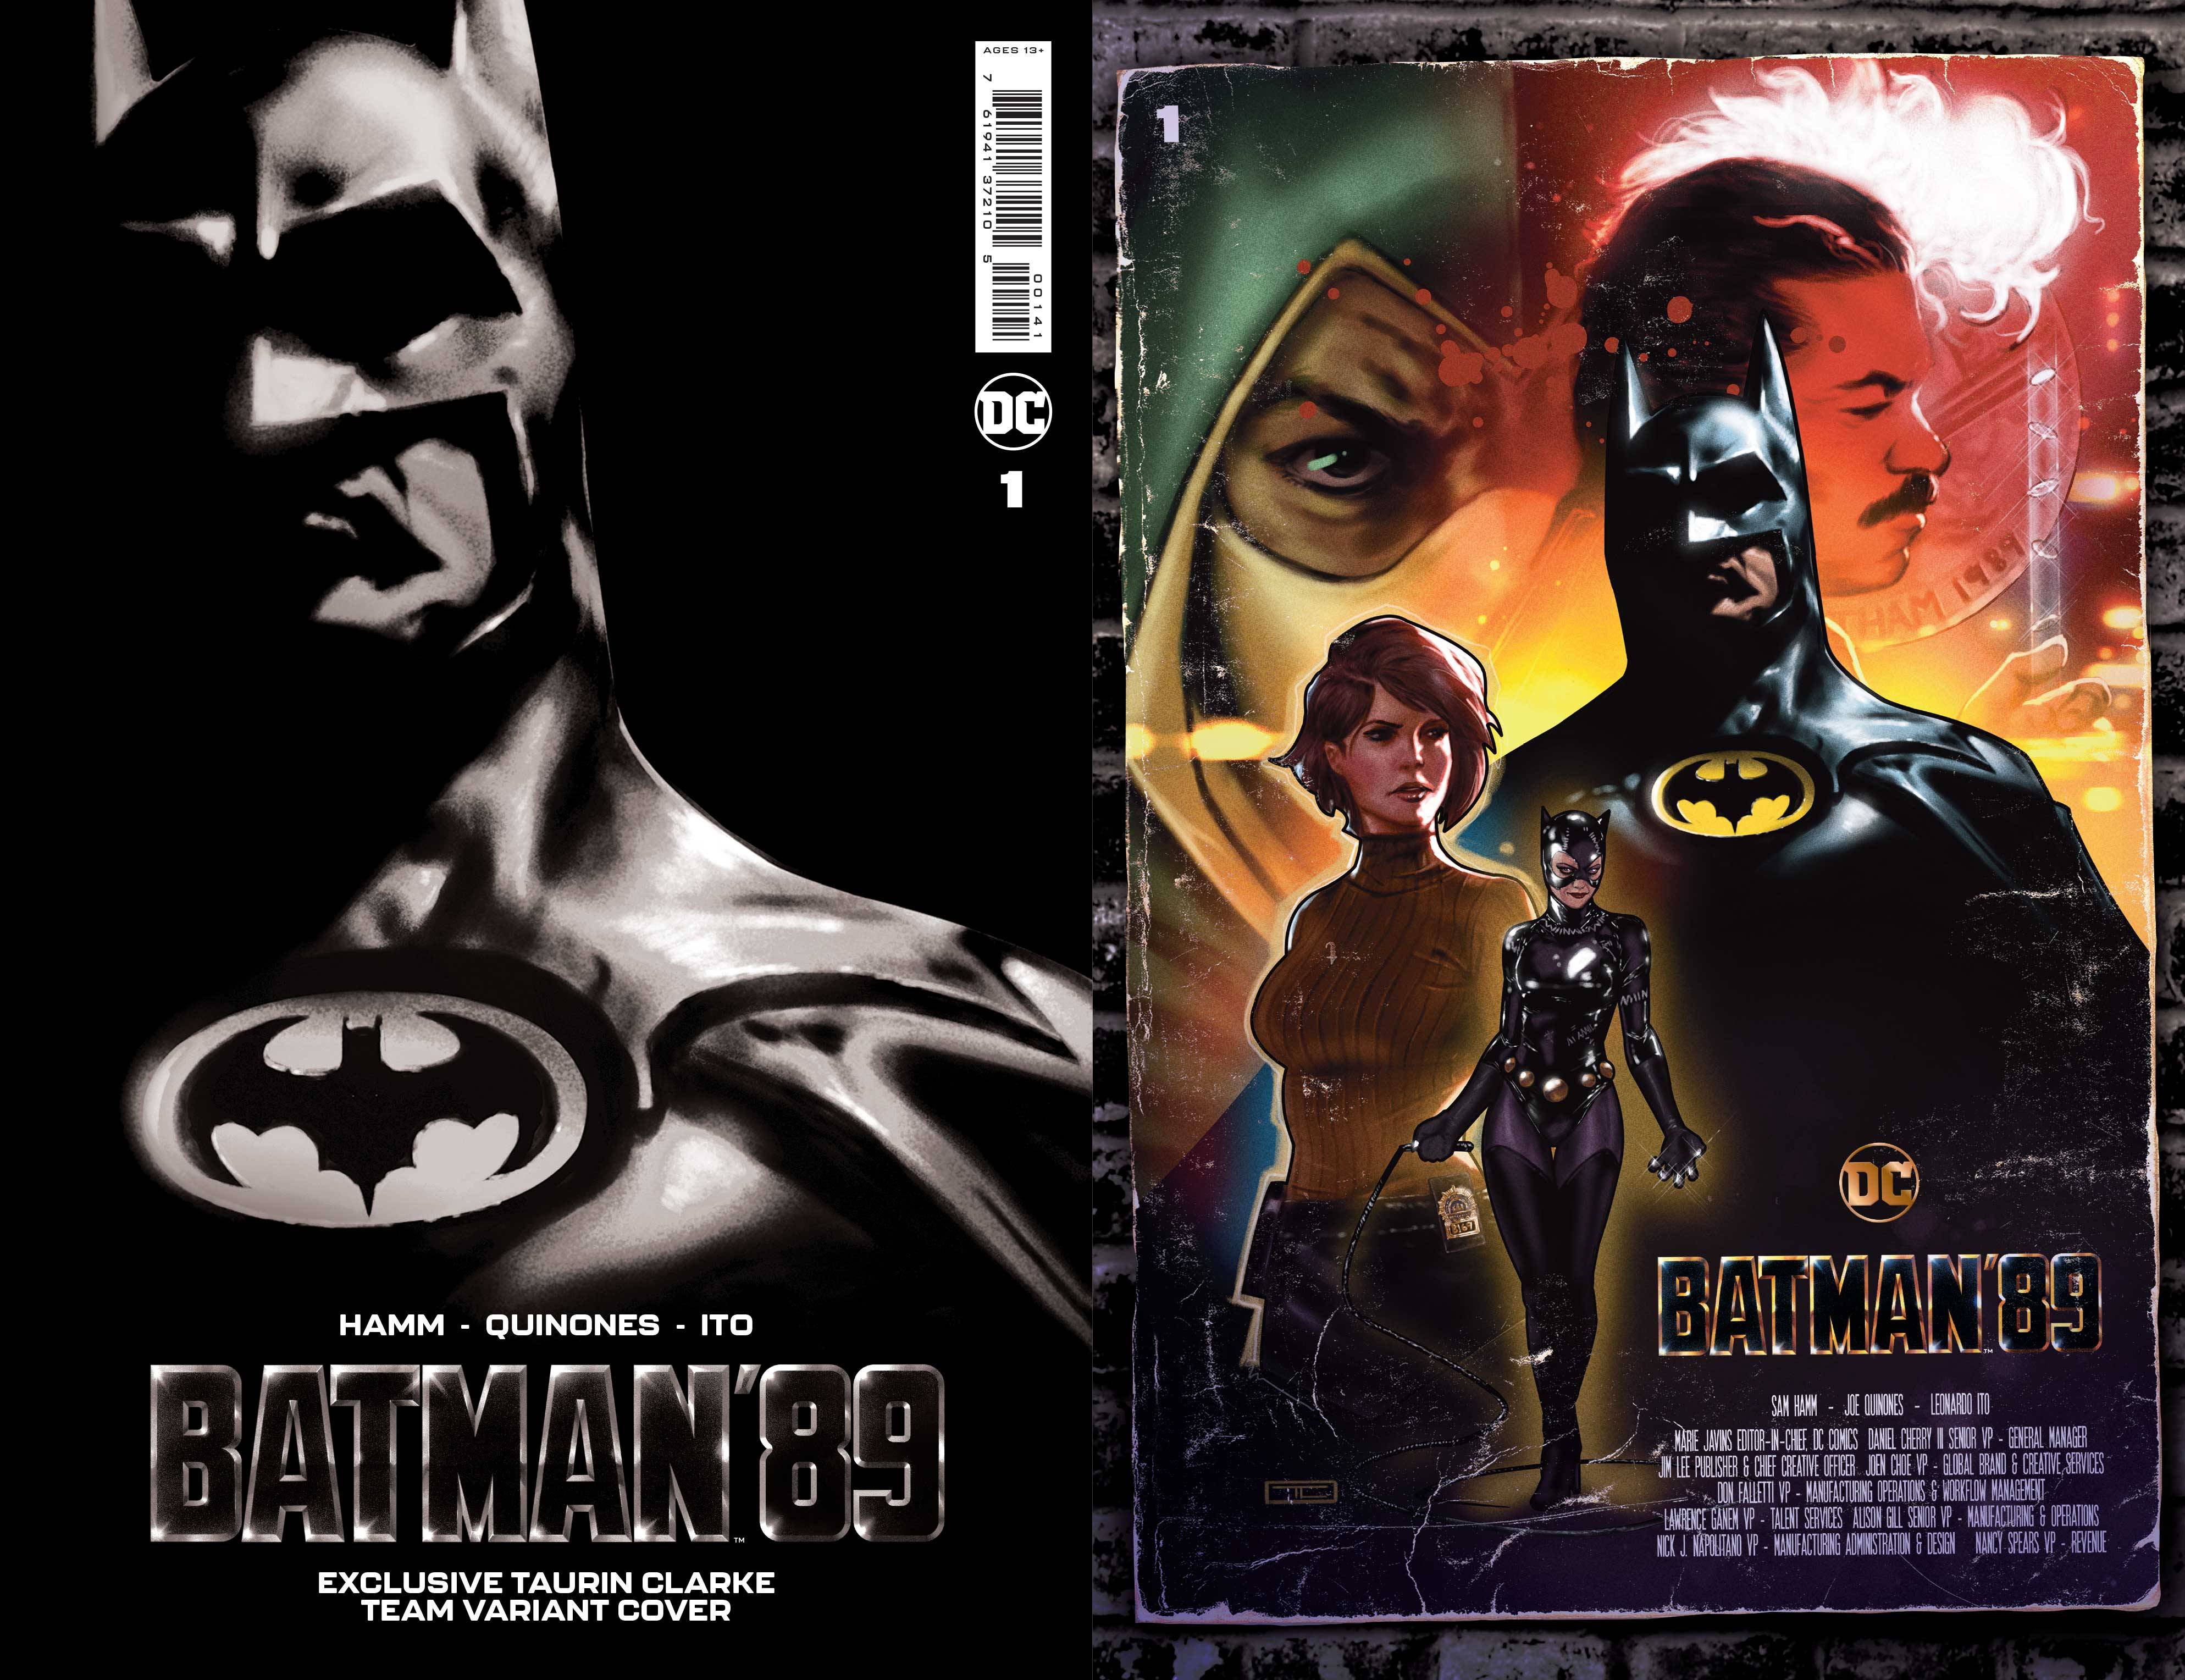 DC COMICS BATMAN 89 #1 COVER A JOE QUINONES